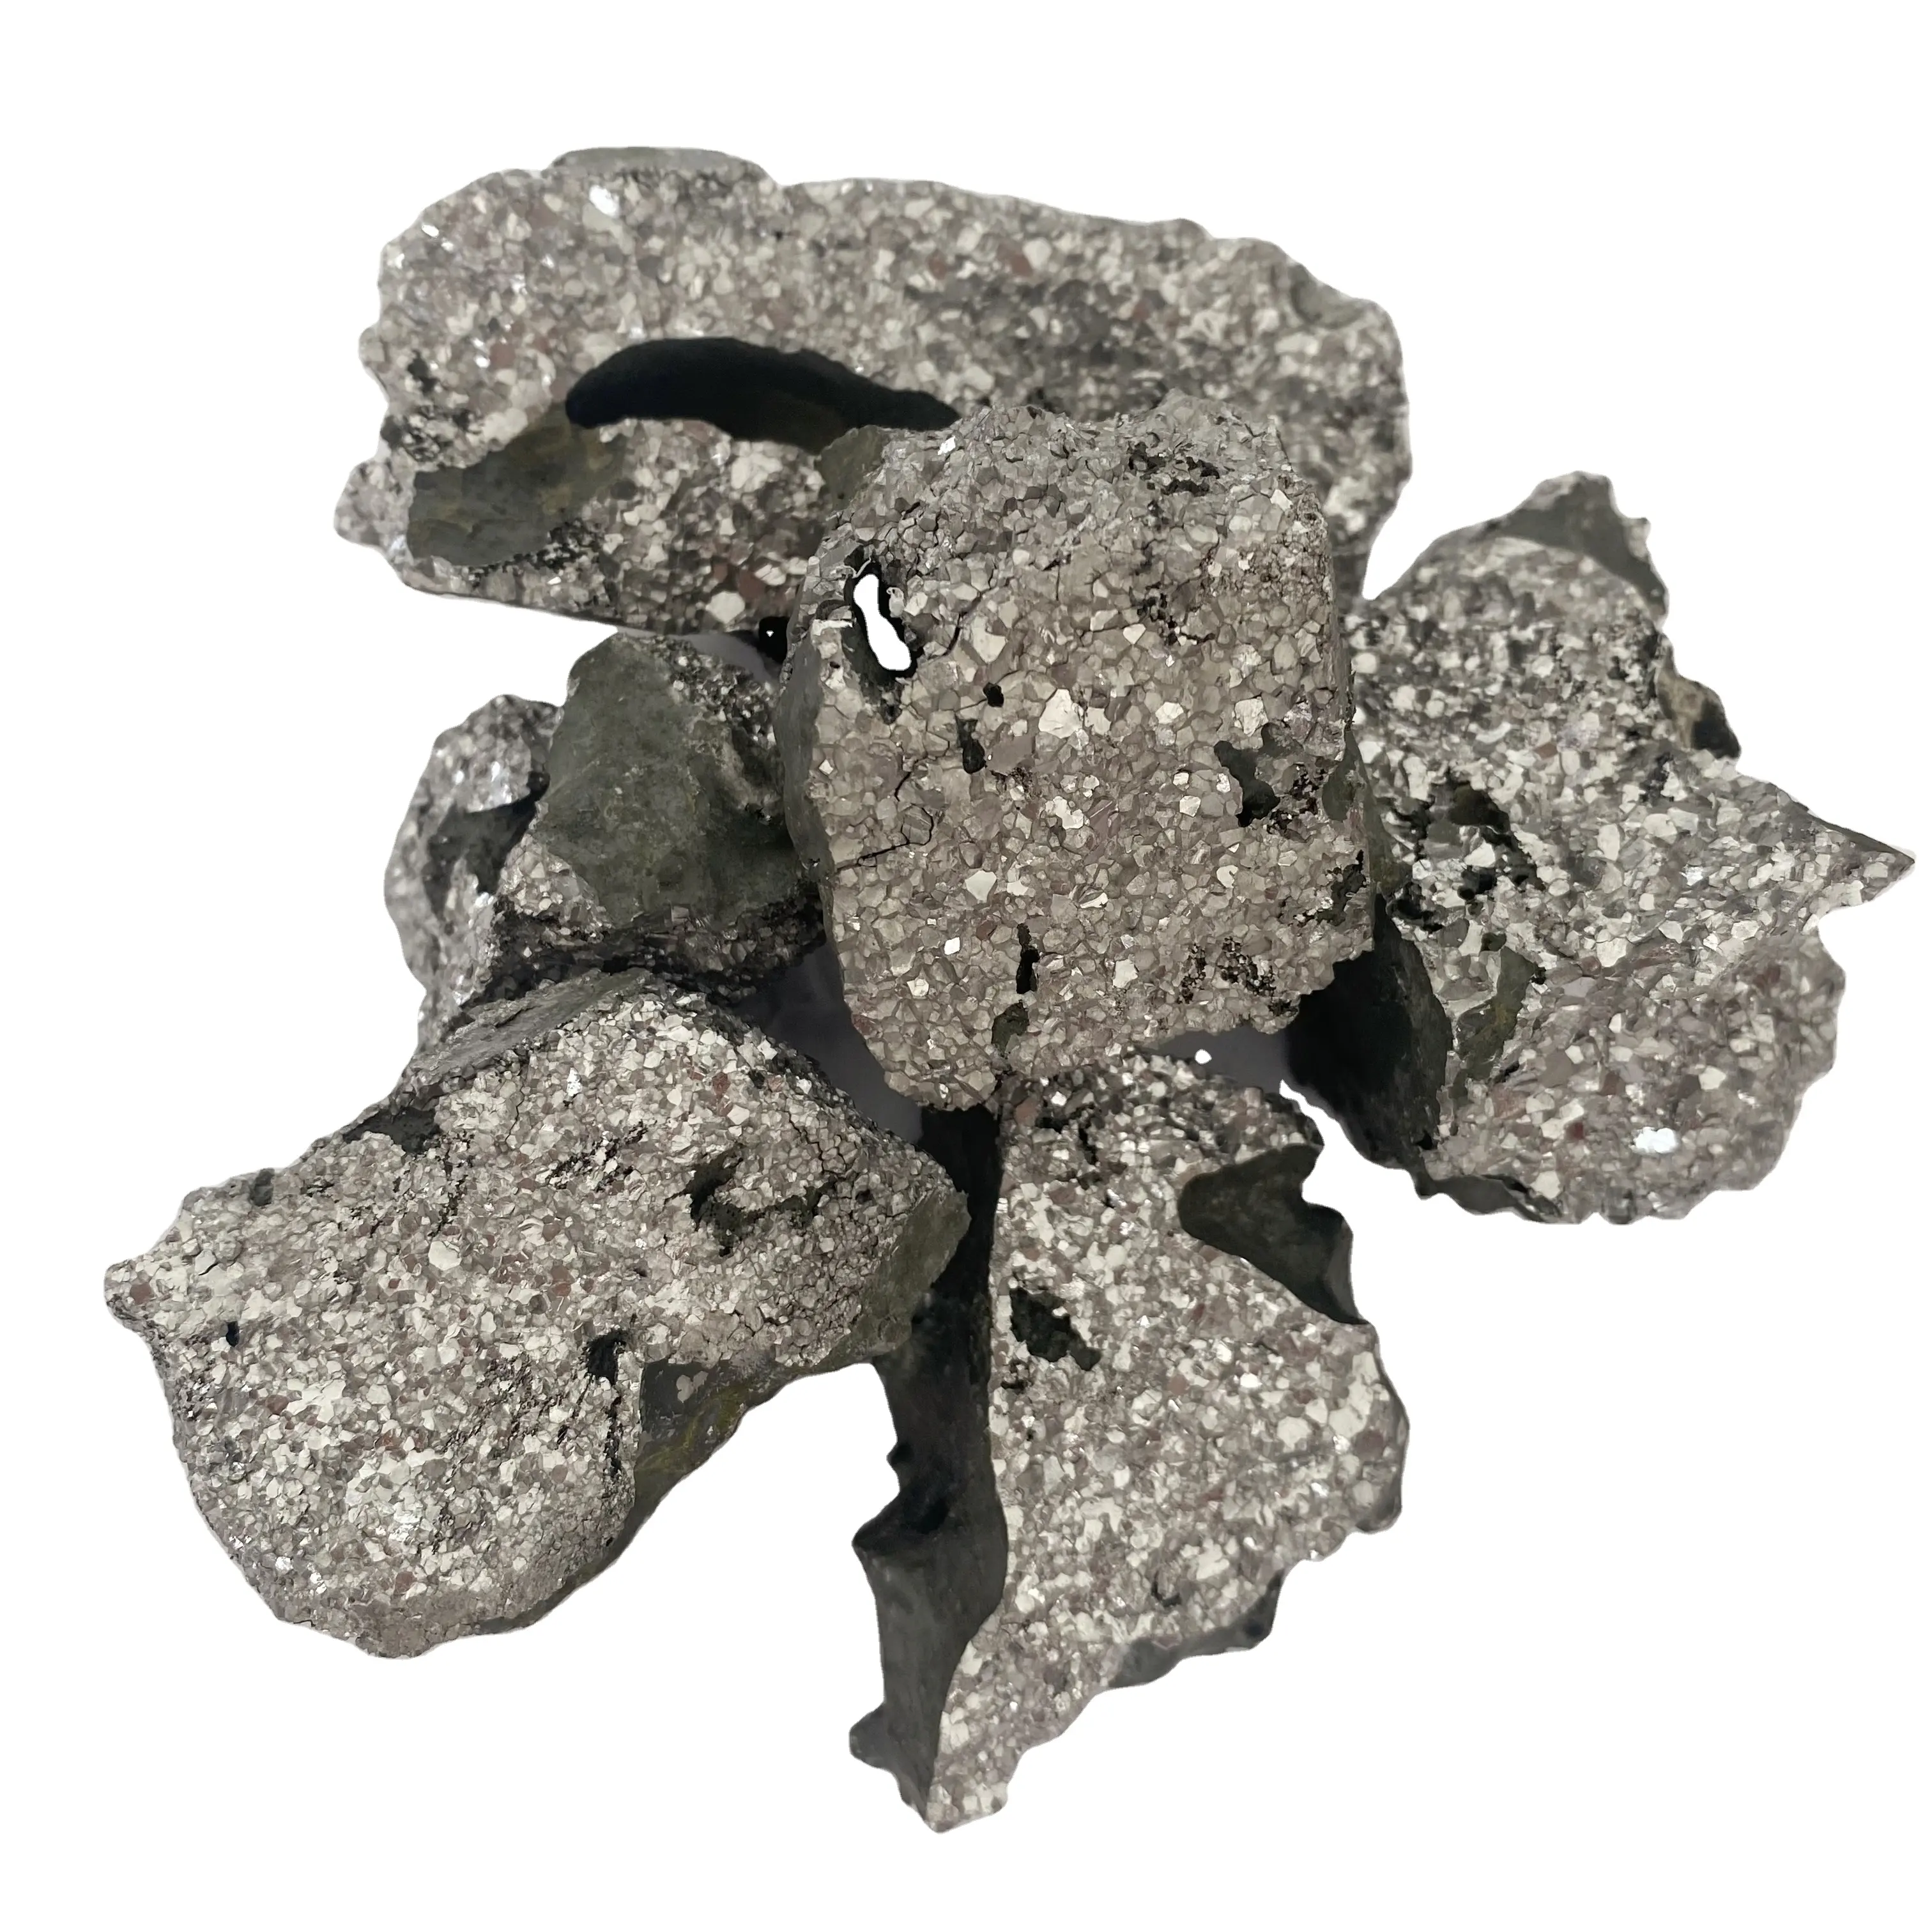 すべてのタイプシリコン金属フェロクロム1トンあたりの価格フェロクロム画像フェロシリコンクロム